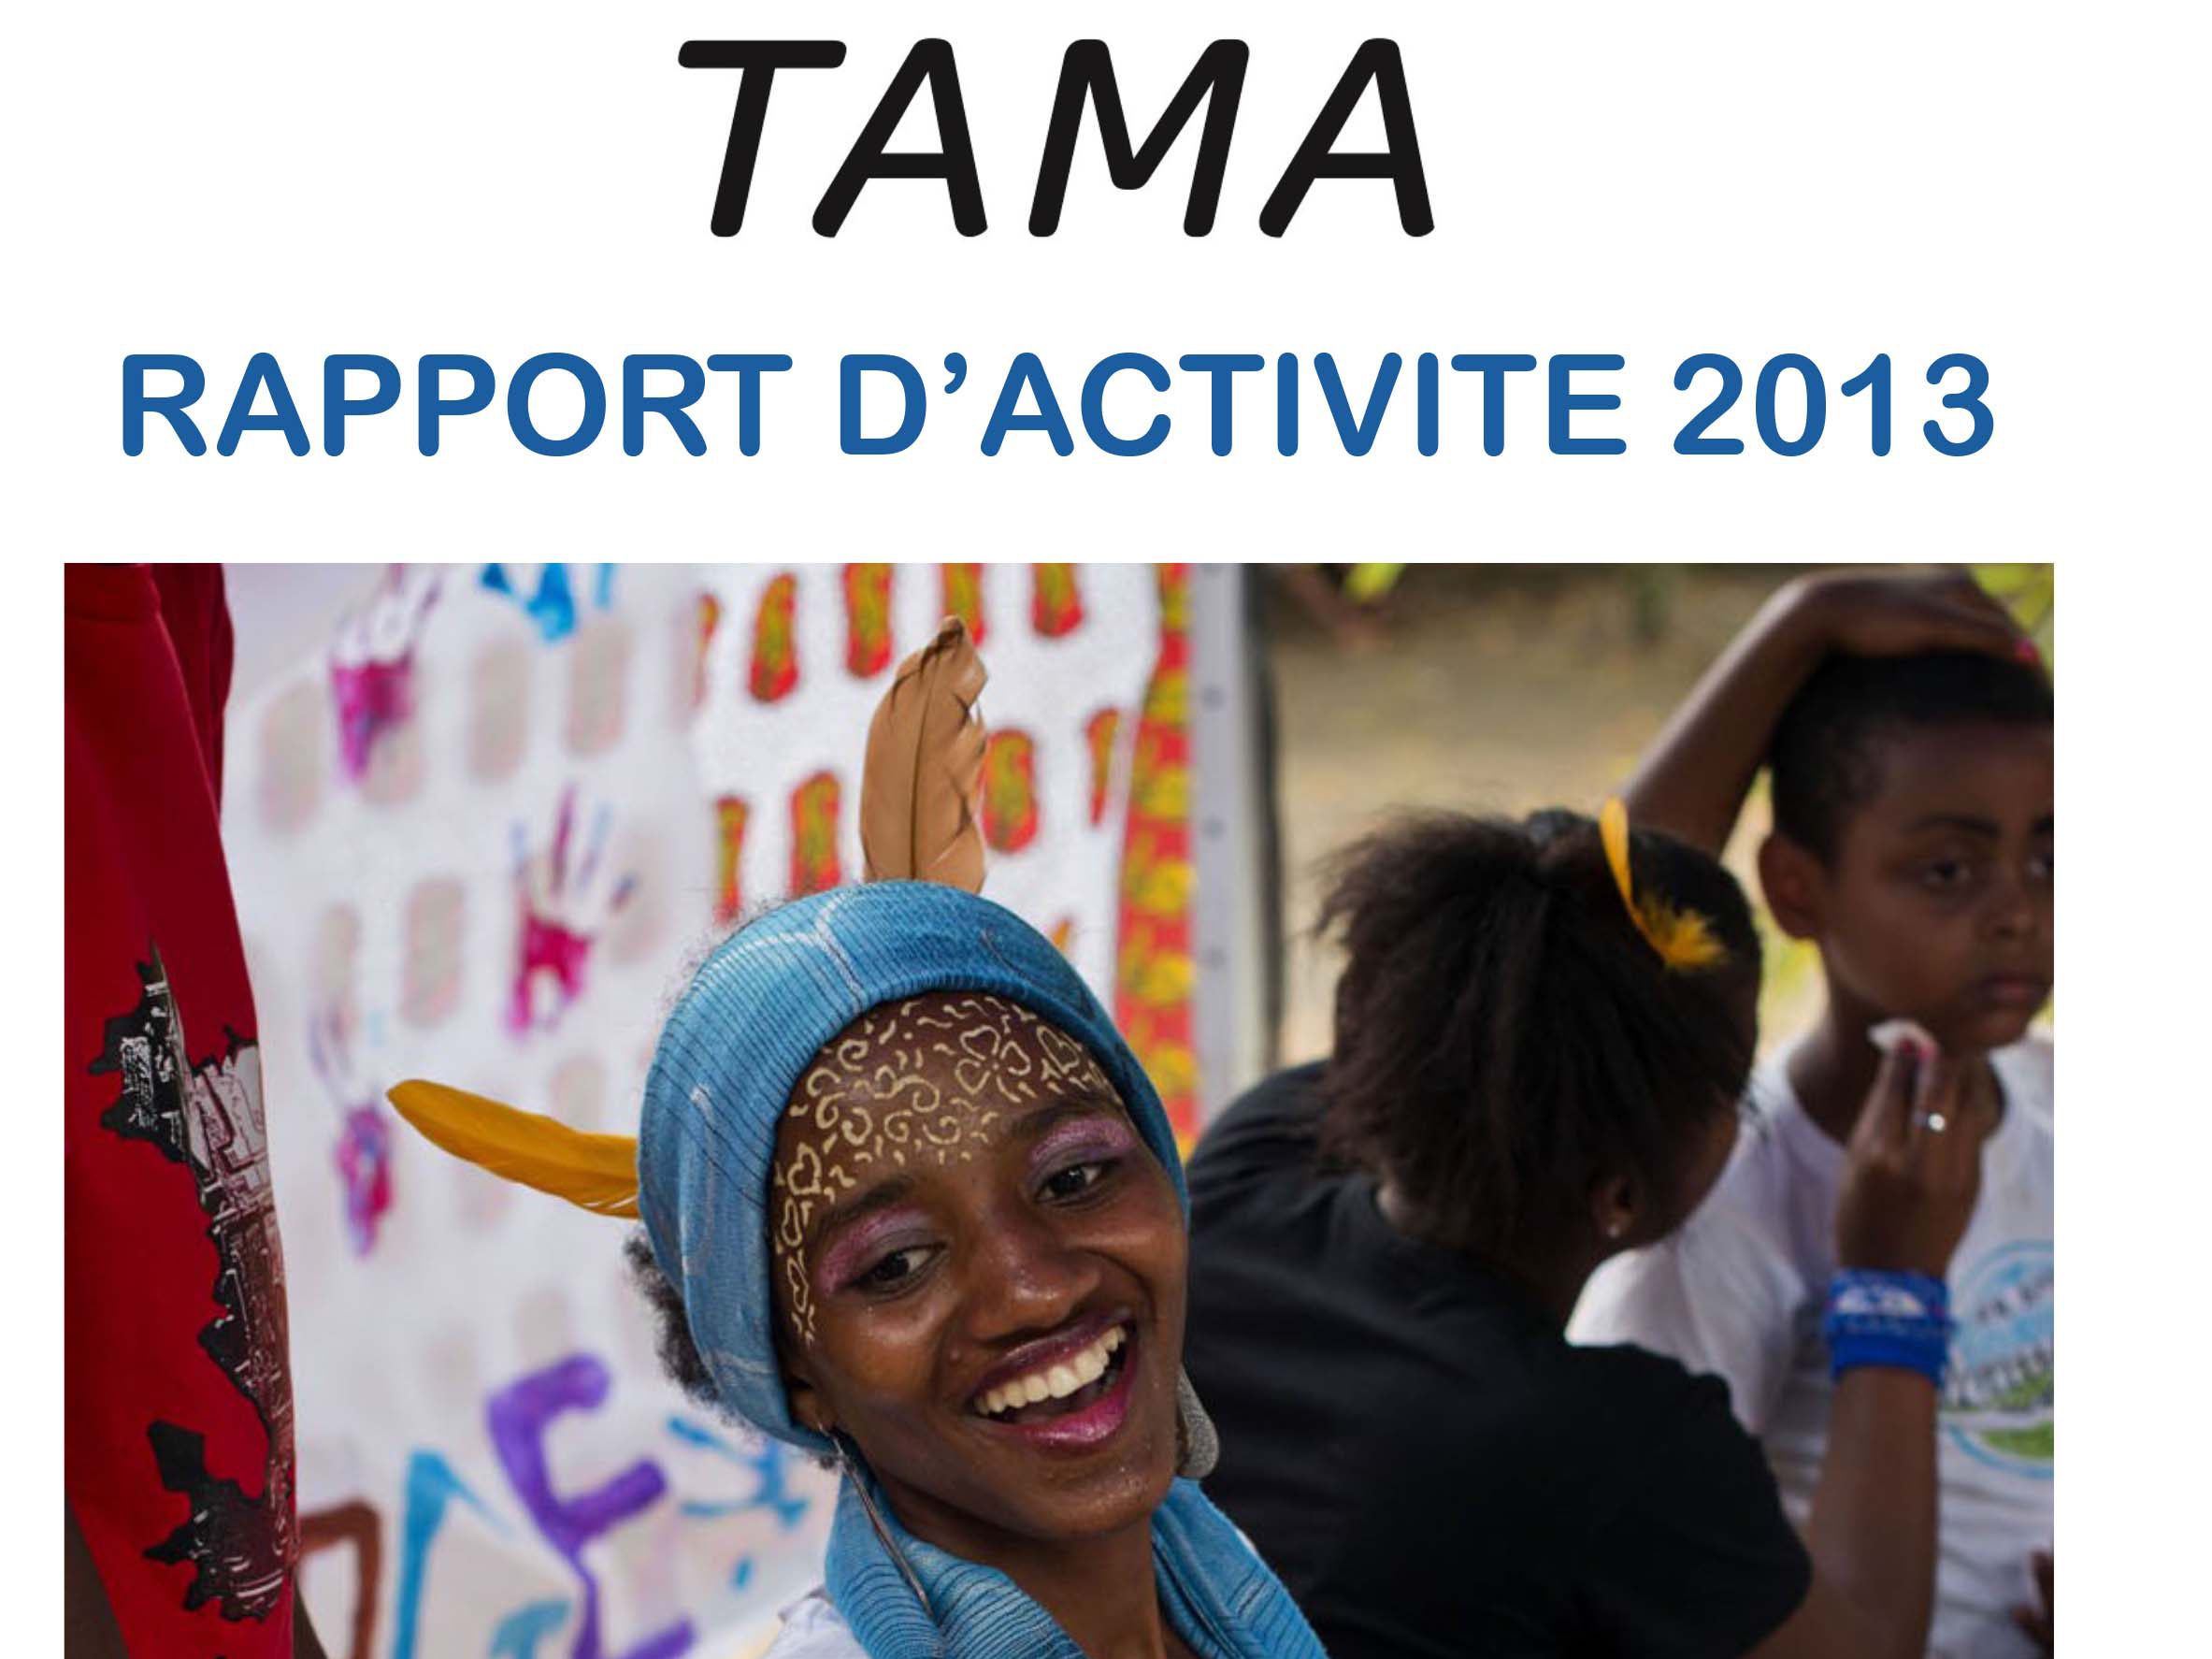 TAMA publie son rapport d’activité 2013